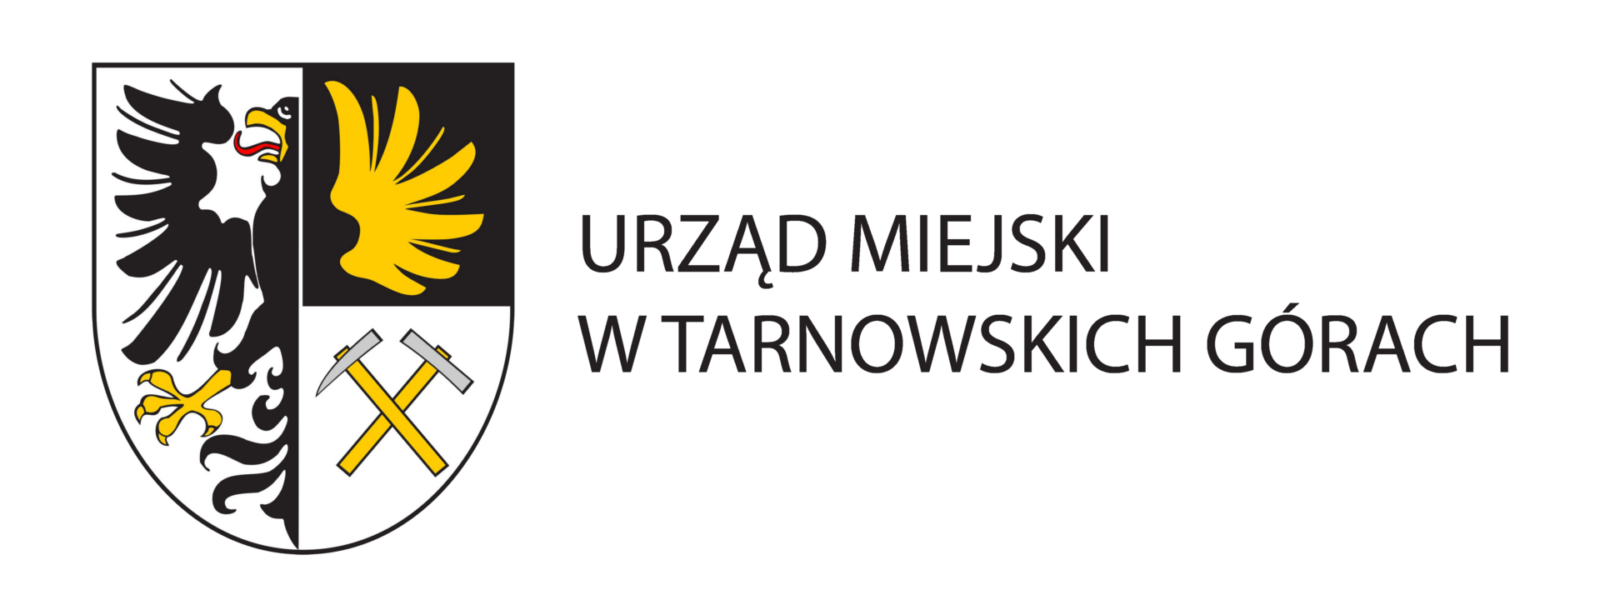 Na zdjęciu logotyp Urzędu Miasta w Tarnowskich Górach 